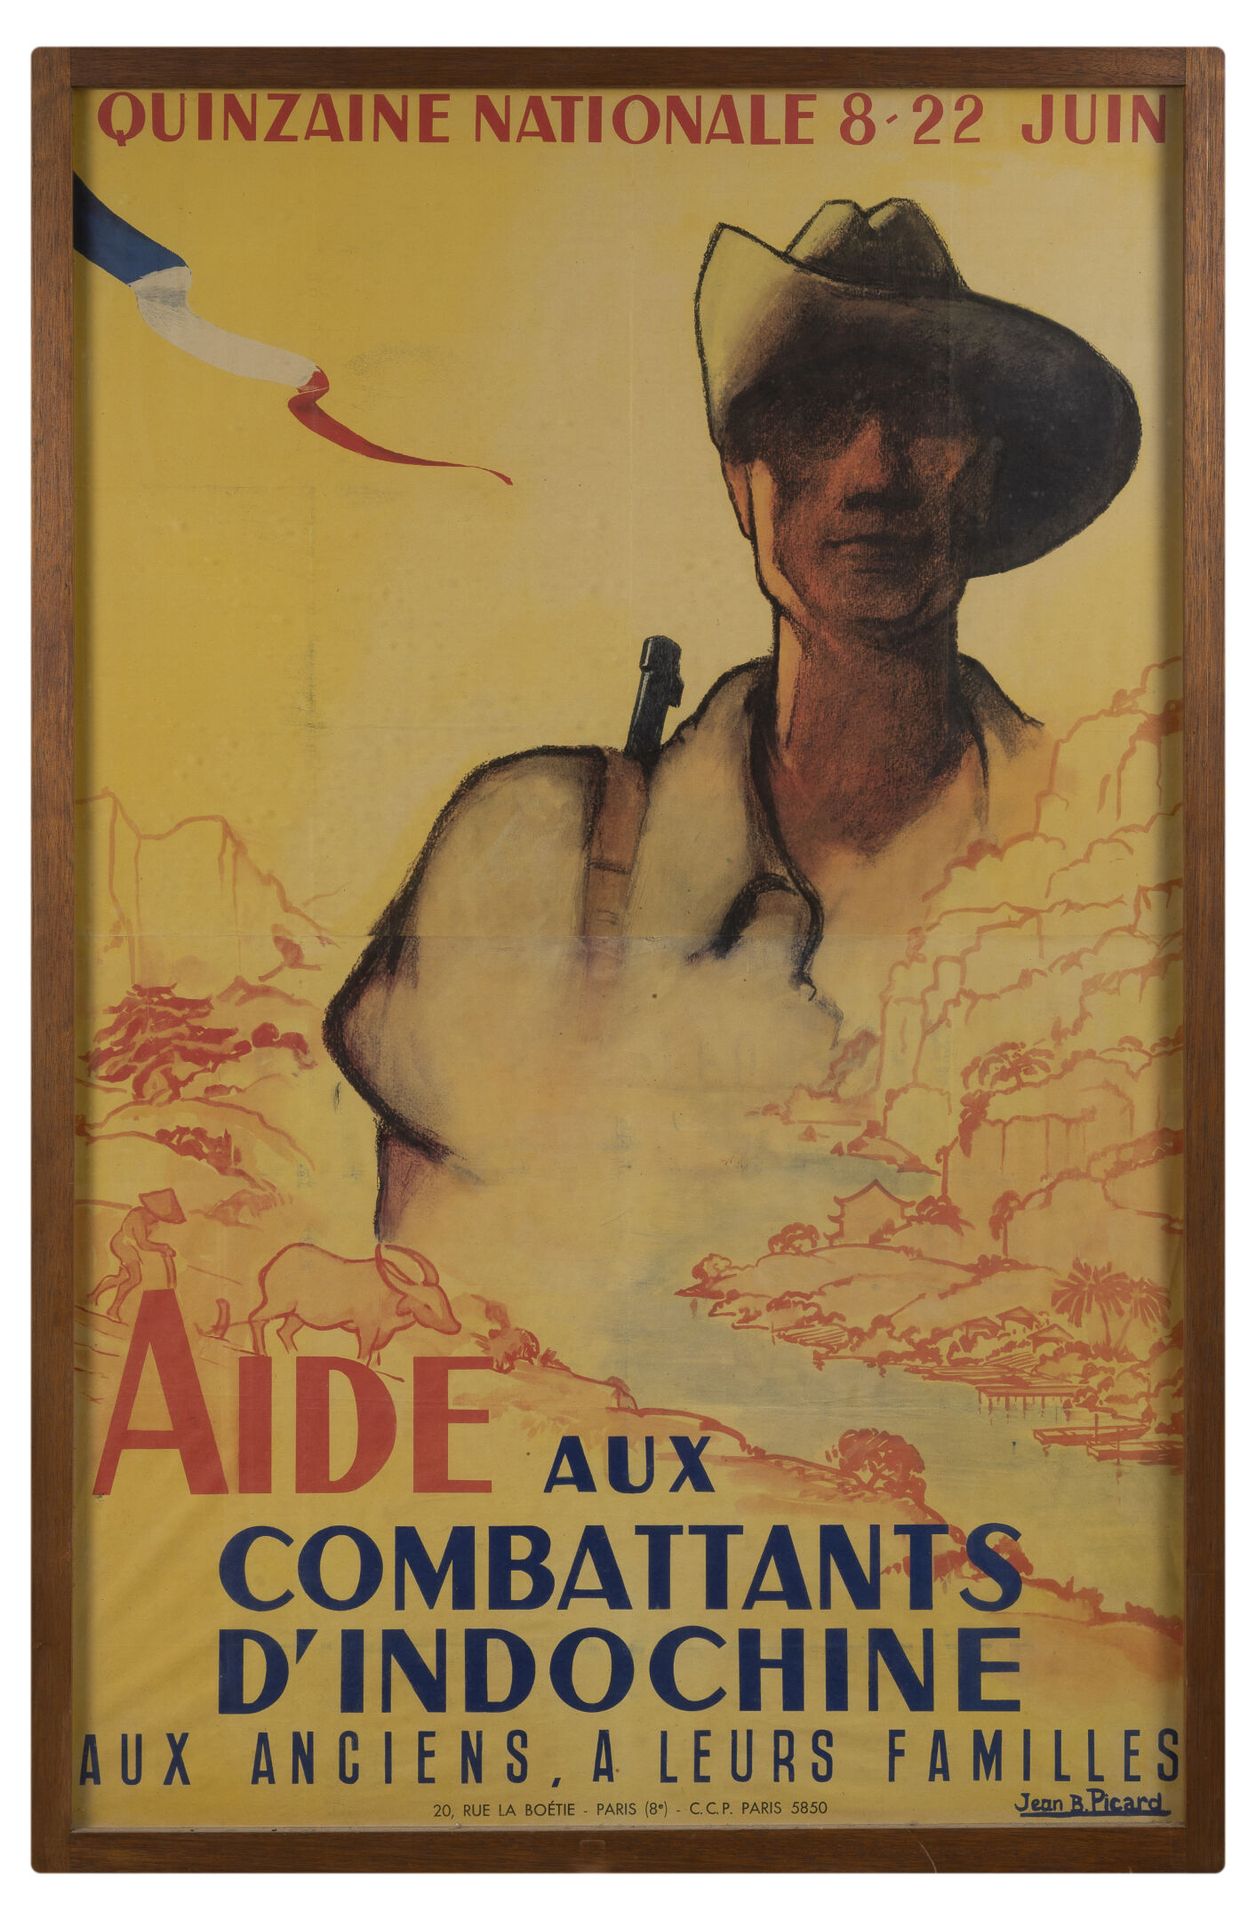 Null Aide aux Combattants d'Indochine.

Affiche illustrée par Jean B. Picard. 

&hellip;